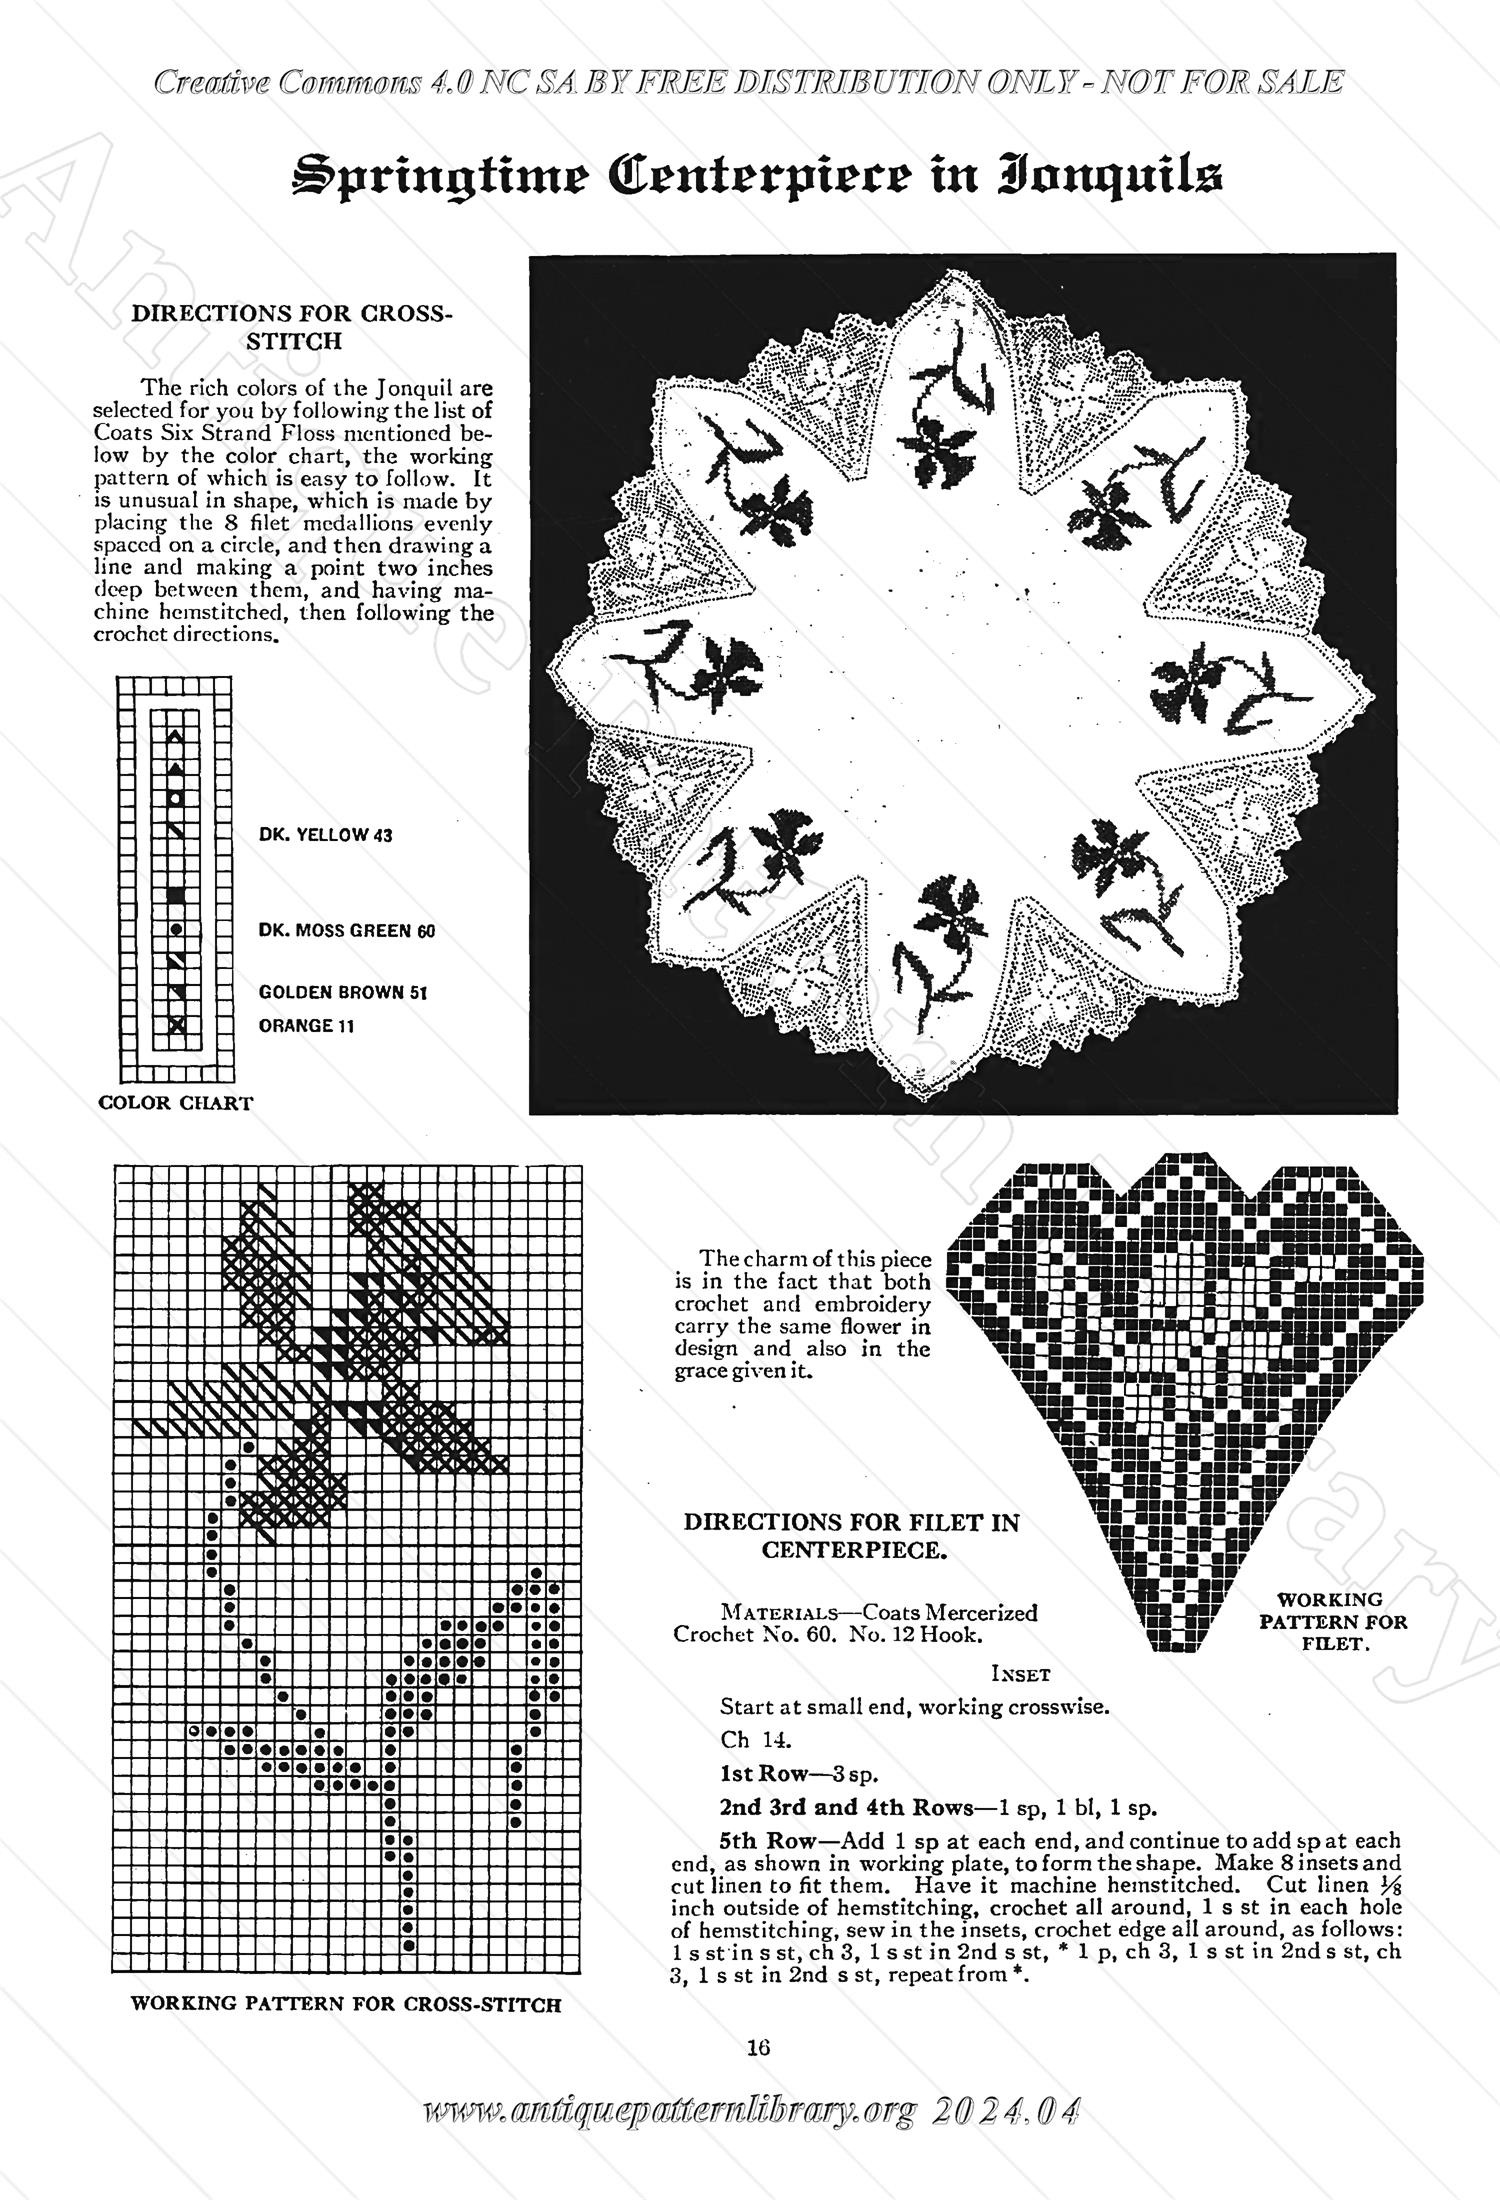 6-TA001 Crochet, Cross Stitch and Tatting